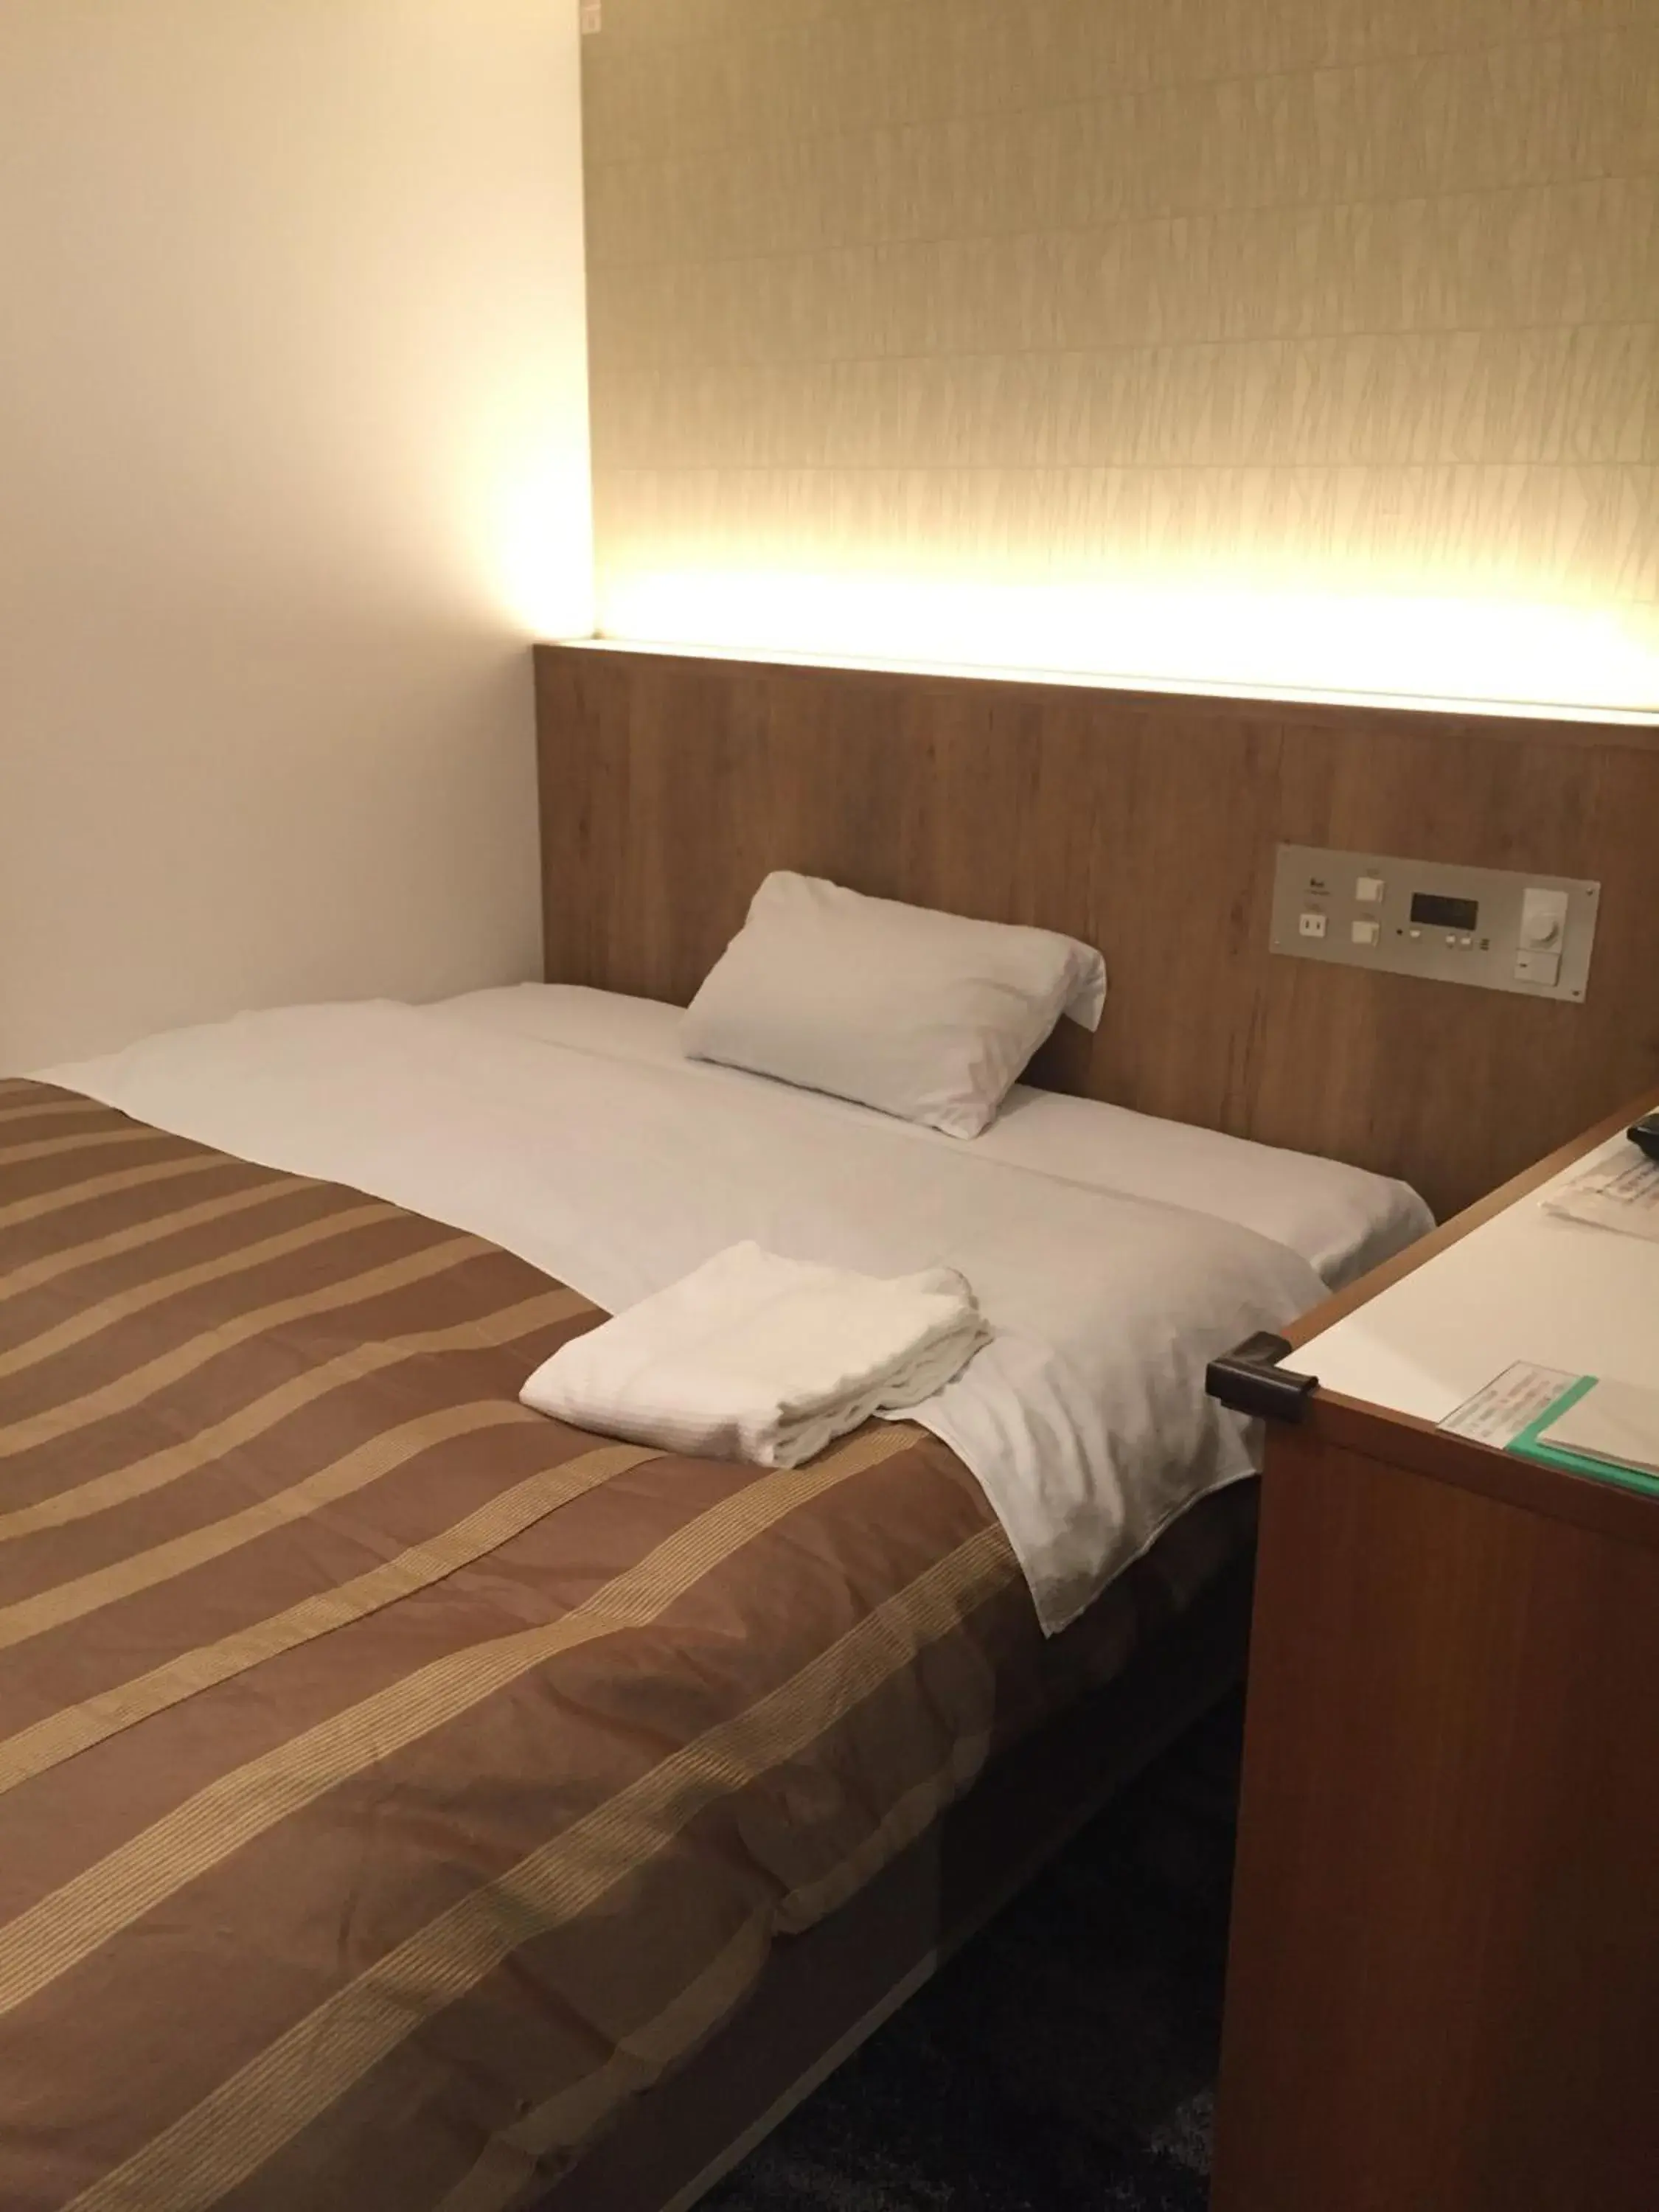 Bed in Hotel Shinjukuya